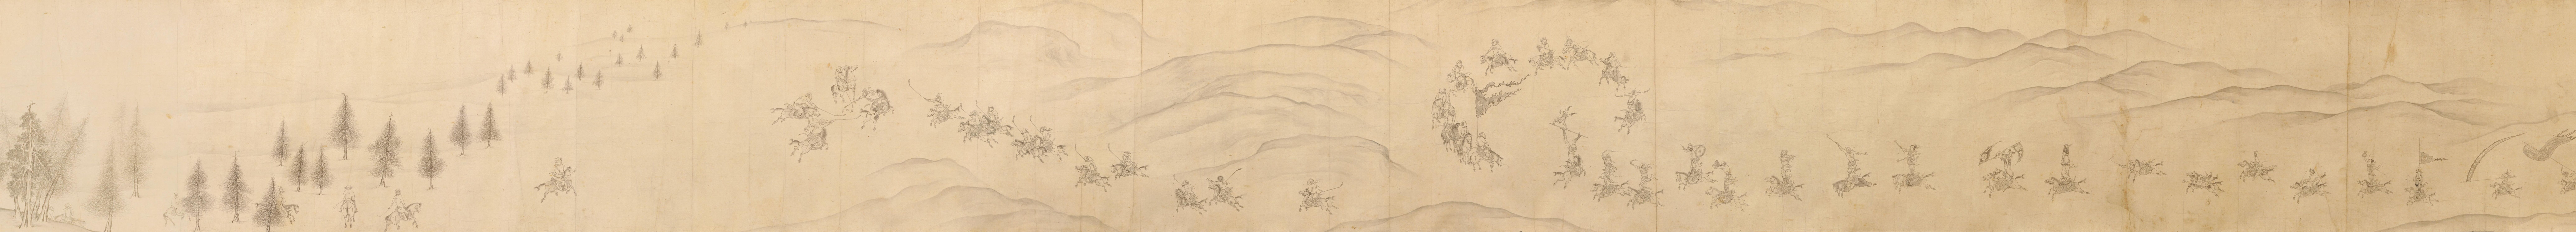 7- « Composition Traité d’alliance au pont Bian », par Chen Jizhi ; illustre l’histoire de Li Shimin transformant le danger en paix par un traité d’alliance avec les envahisseurs Turkic la 9e année de l’ère Wude (626) de la dynastie Tang.